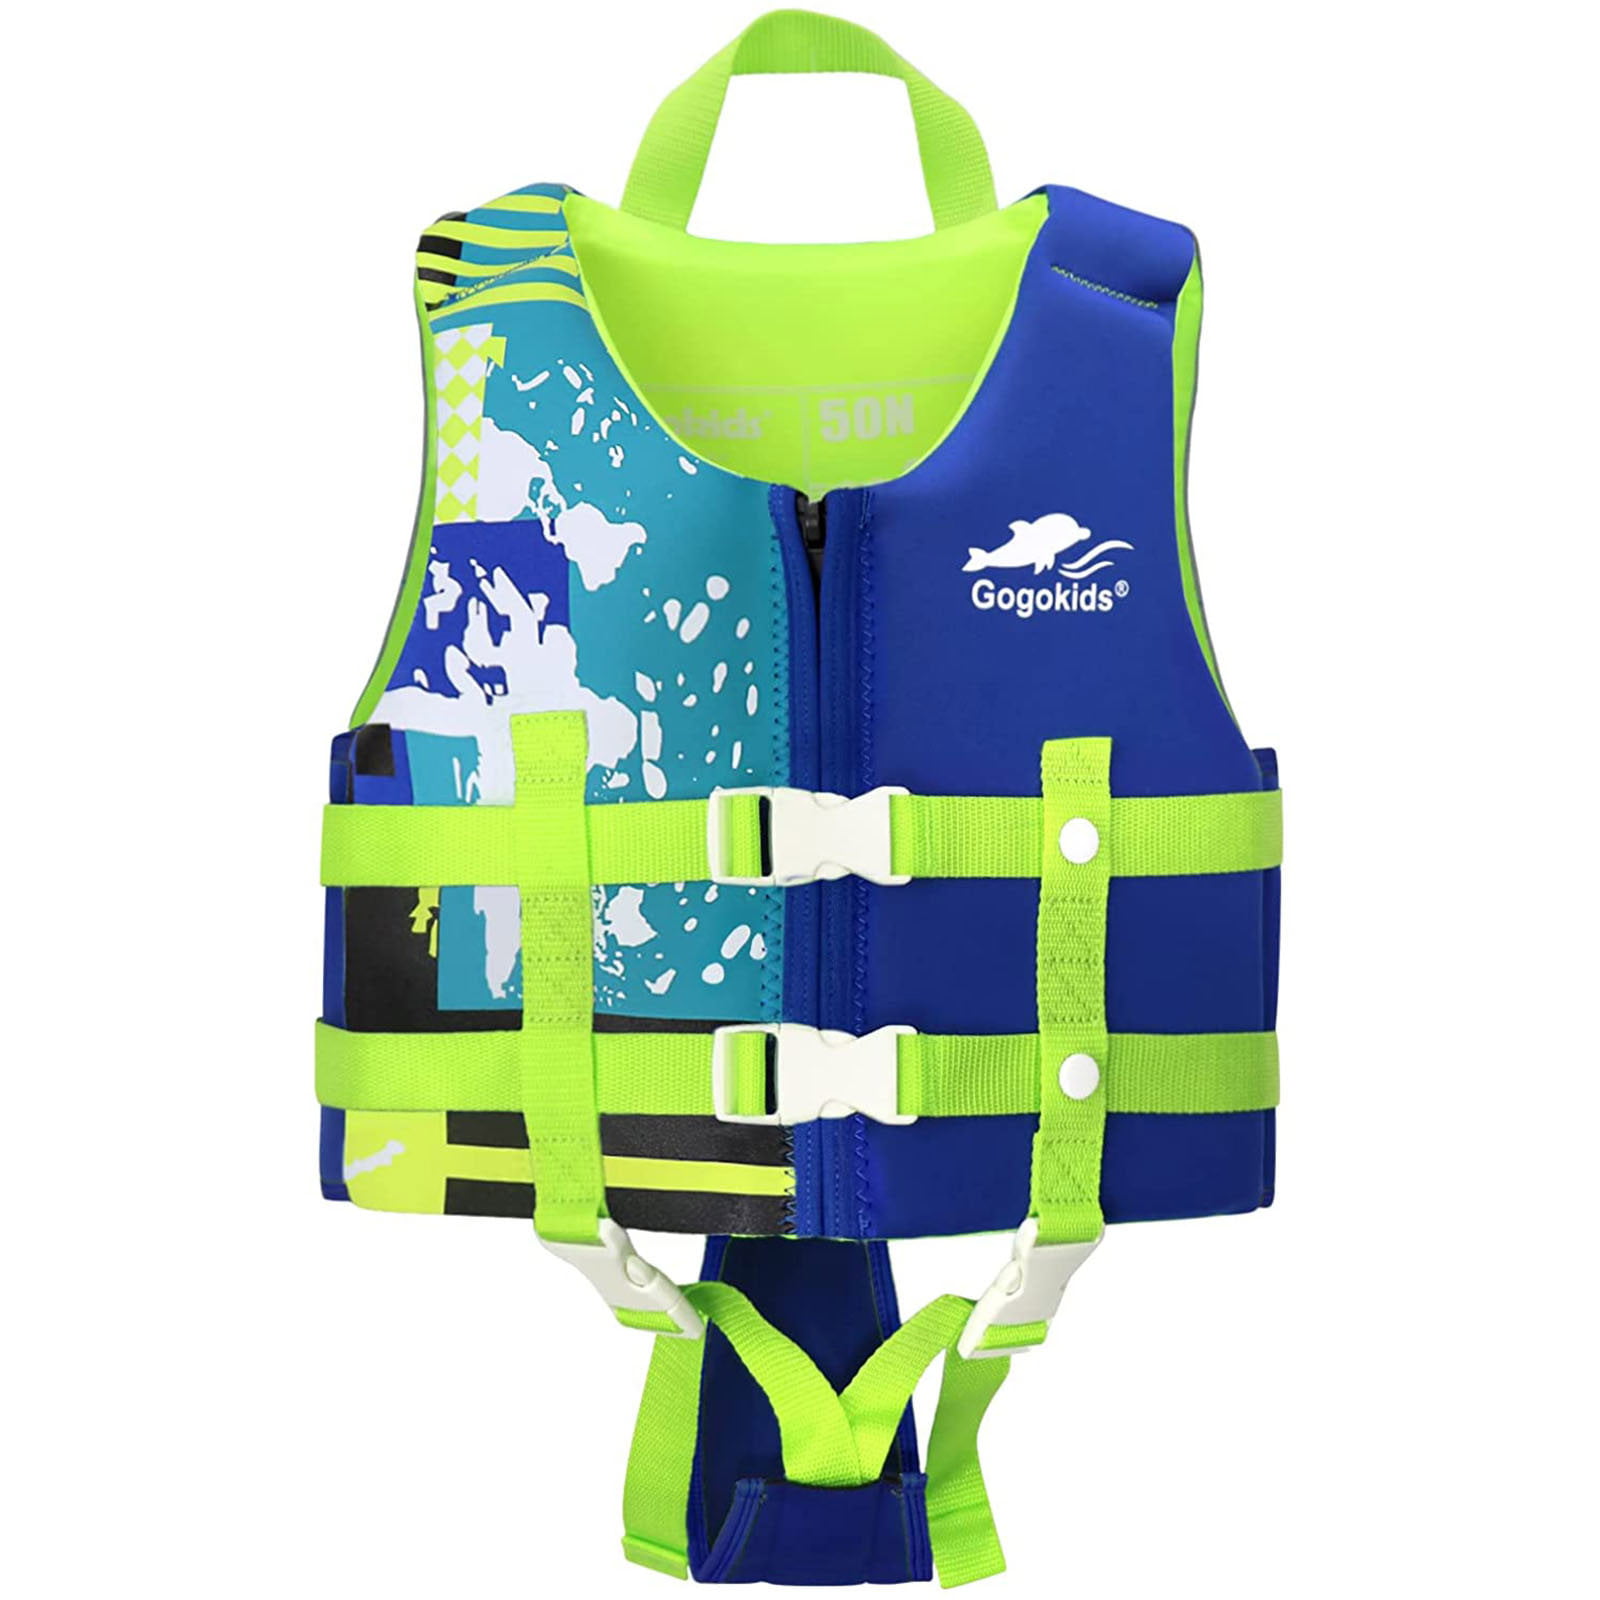 Child Life Jacket New Swimming Floating Swim Vest Kids Aid Jacket Buoyancy Toy 